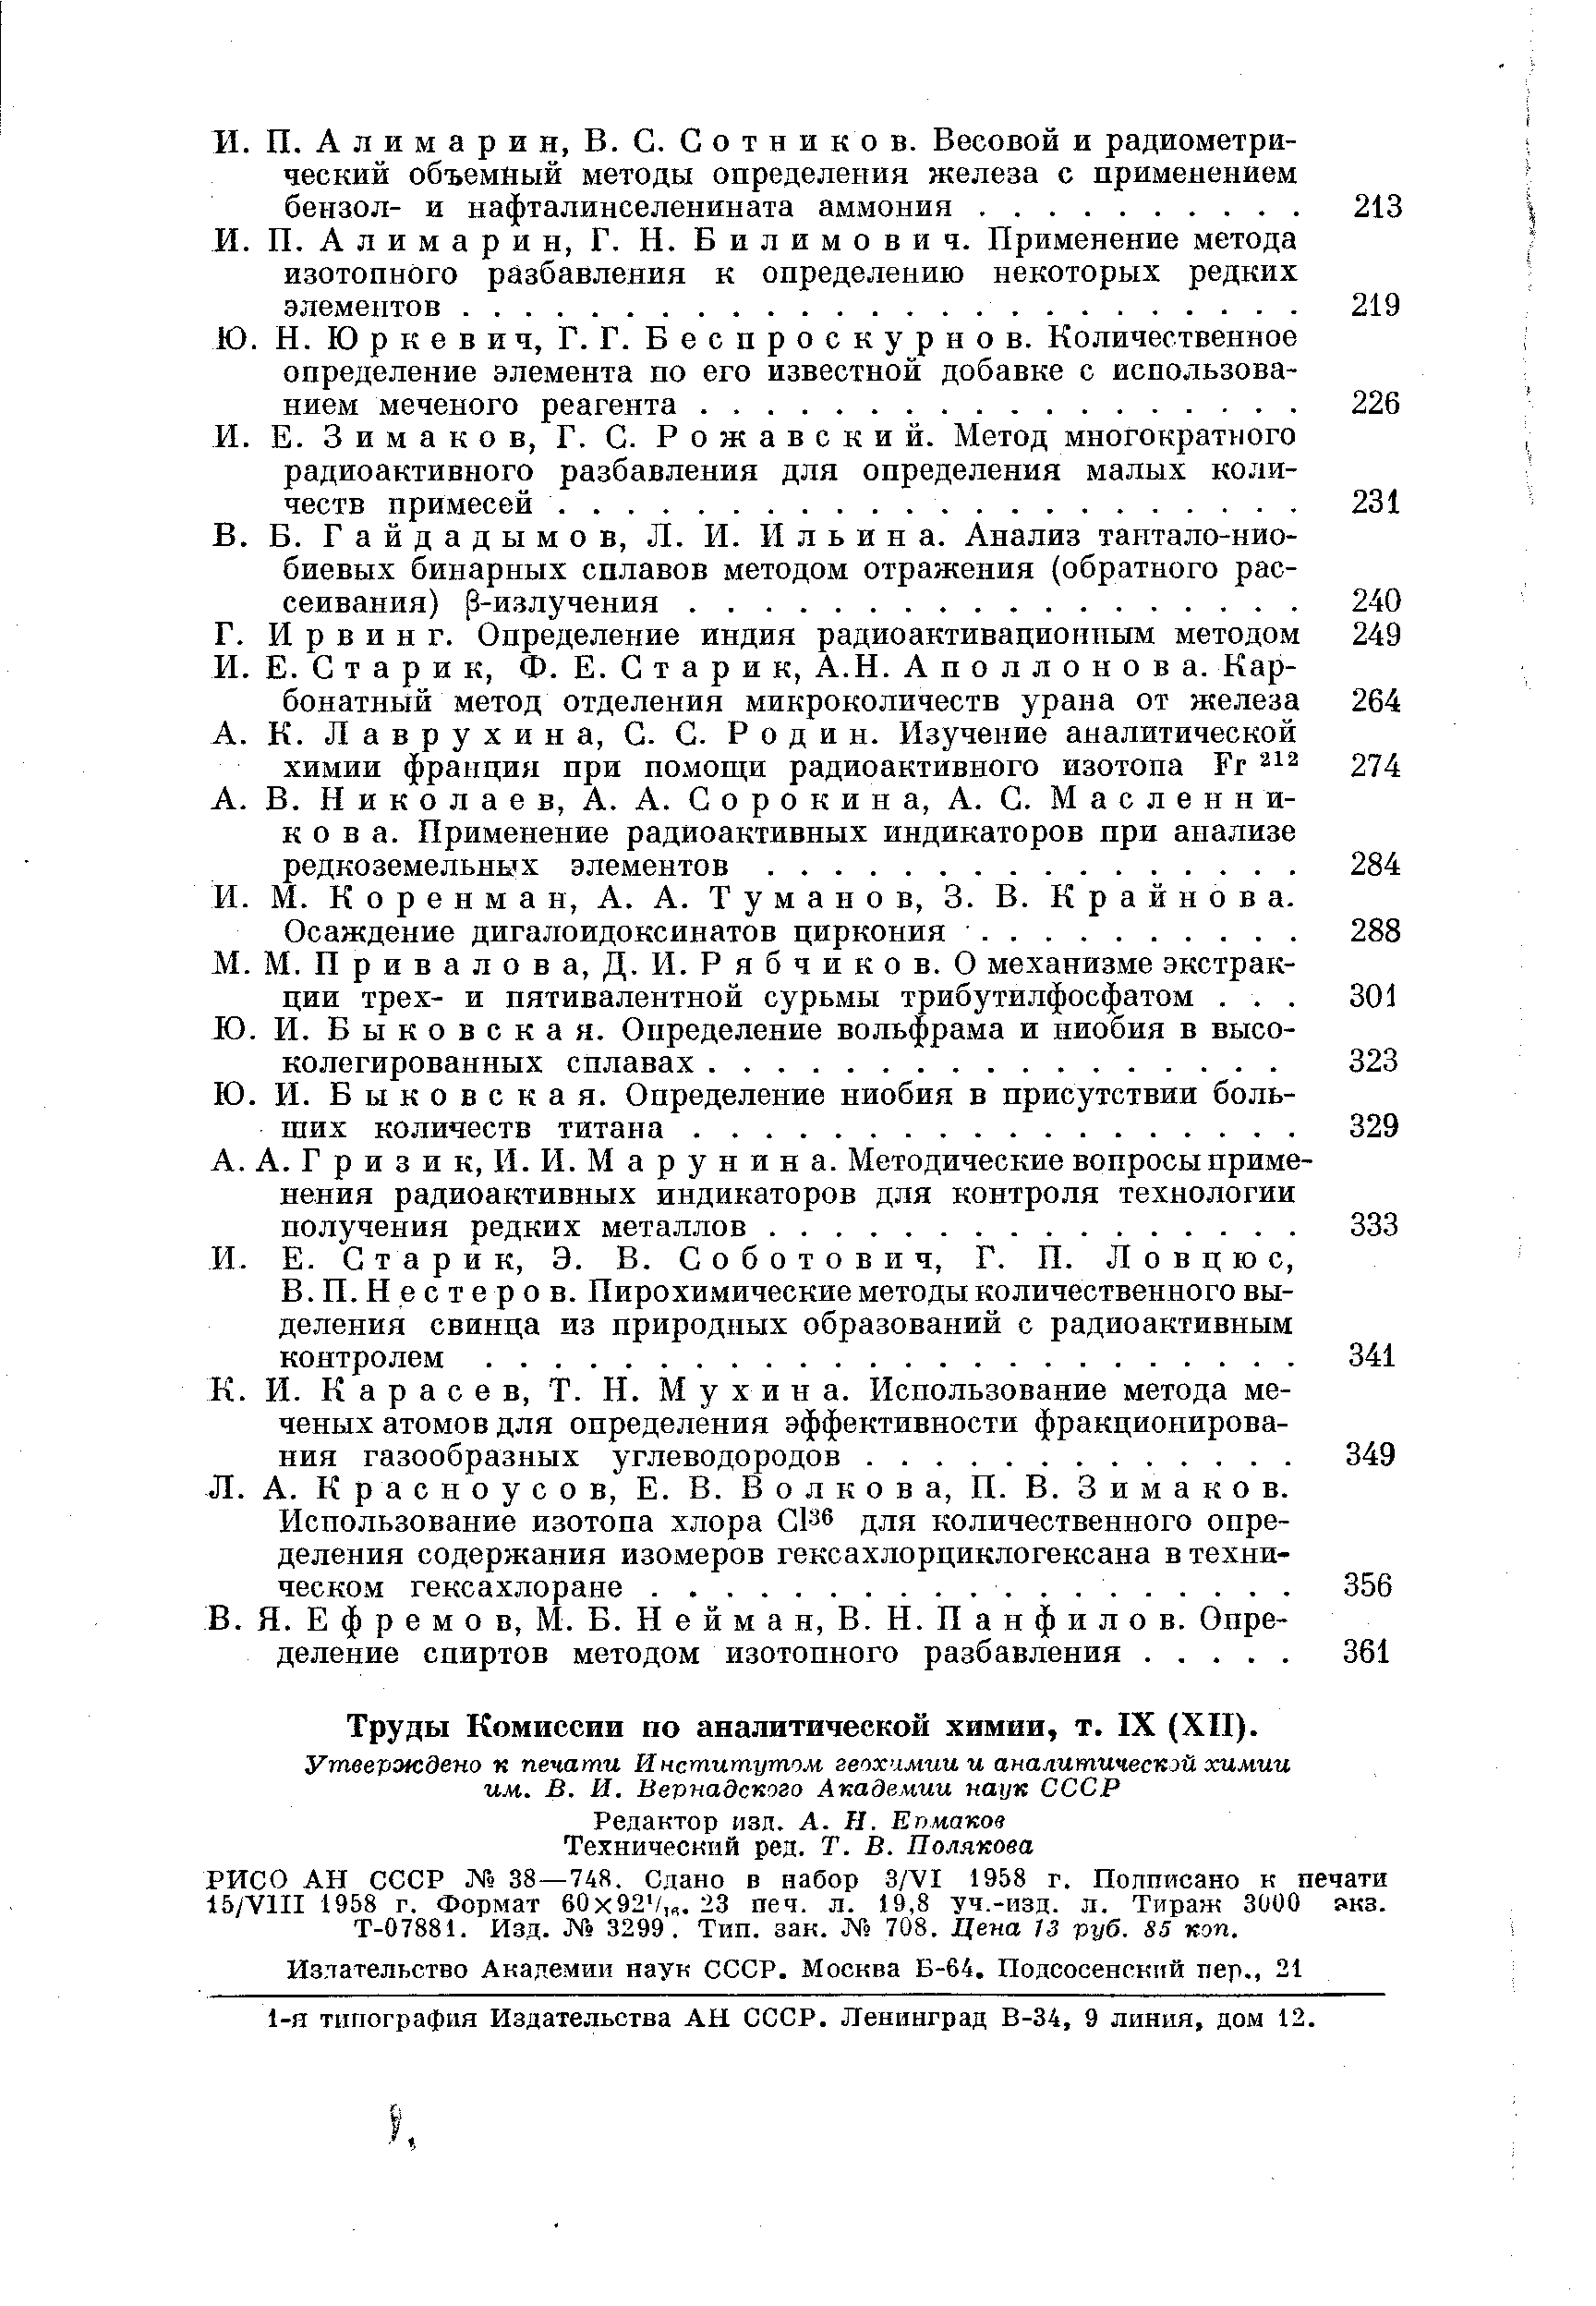 Труды Комиссии по аналитической химии, т. IX (XII).